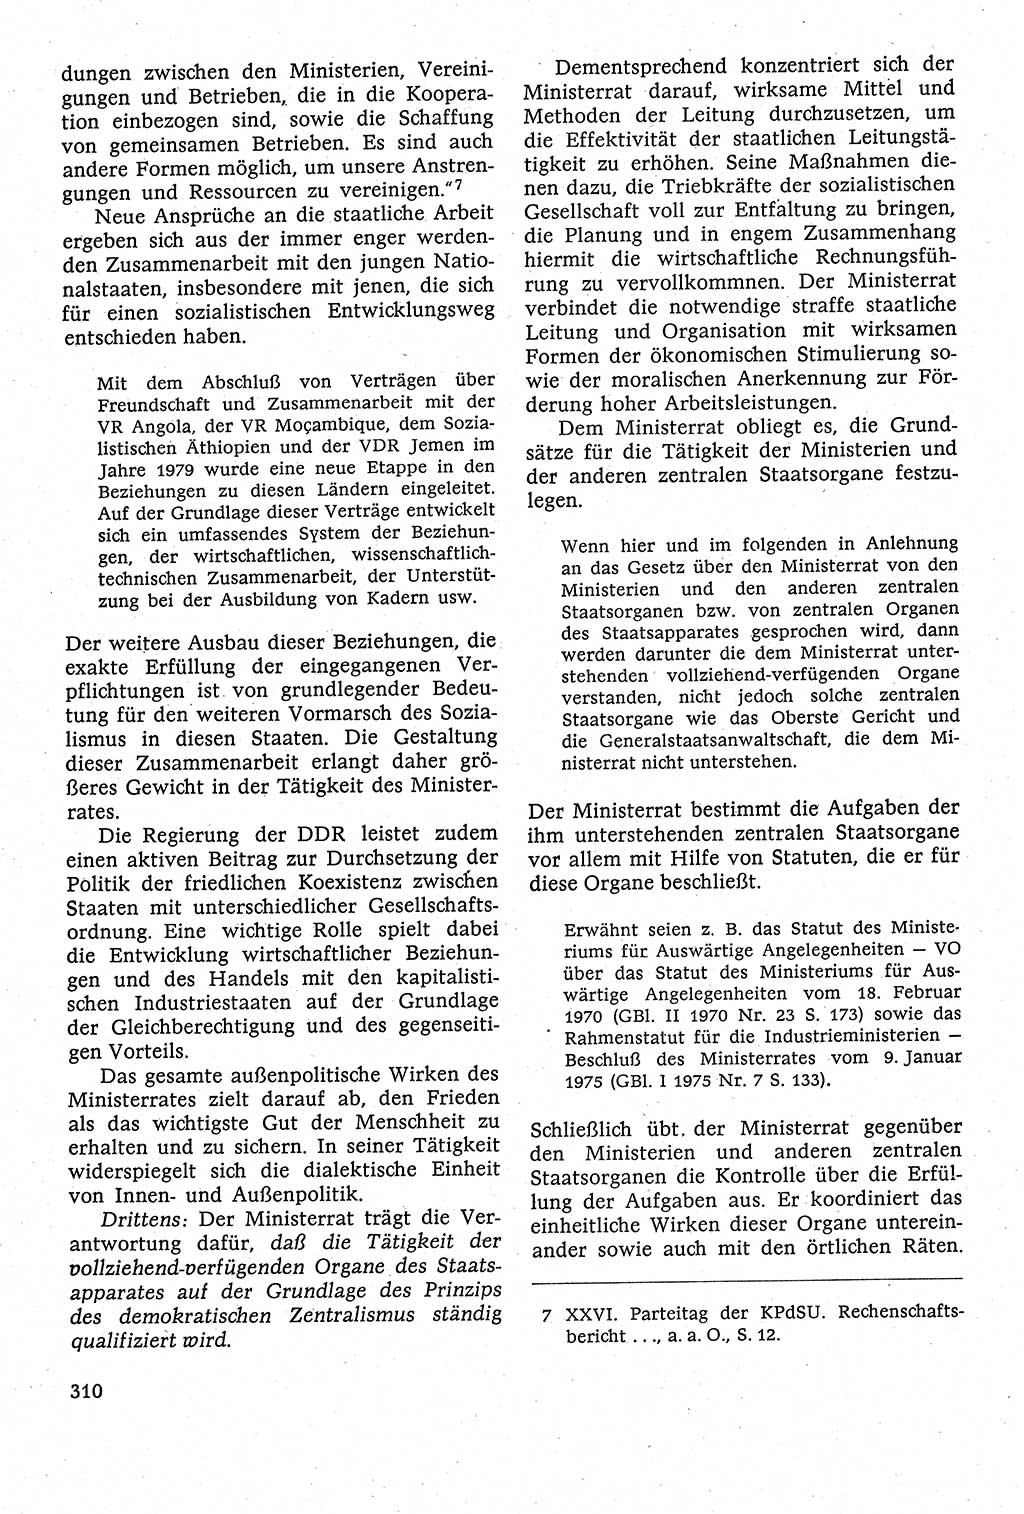 Staatsrecht der DDR [Deutsche Demokratische Republik (DDR)], Lehrbuch 1984, Seite 310 (St.-R. DDR Lb. 1984, S. 310)